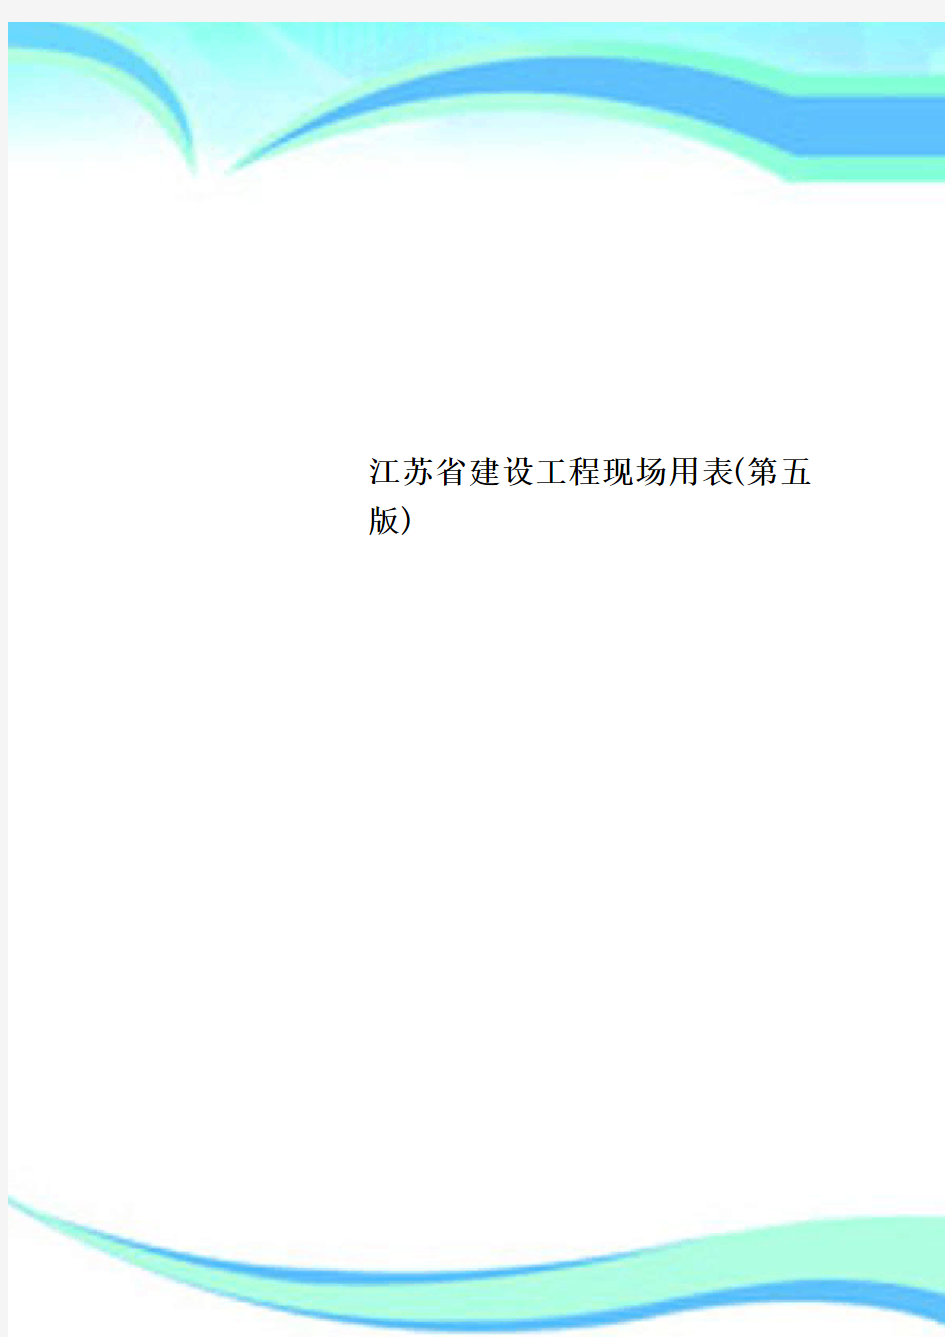 江苏省建设工程现场用表第五版